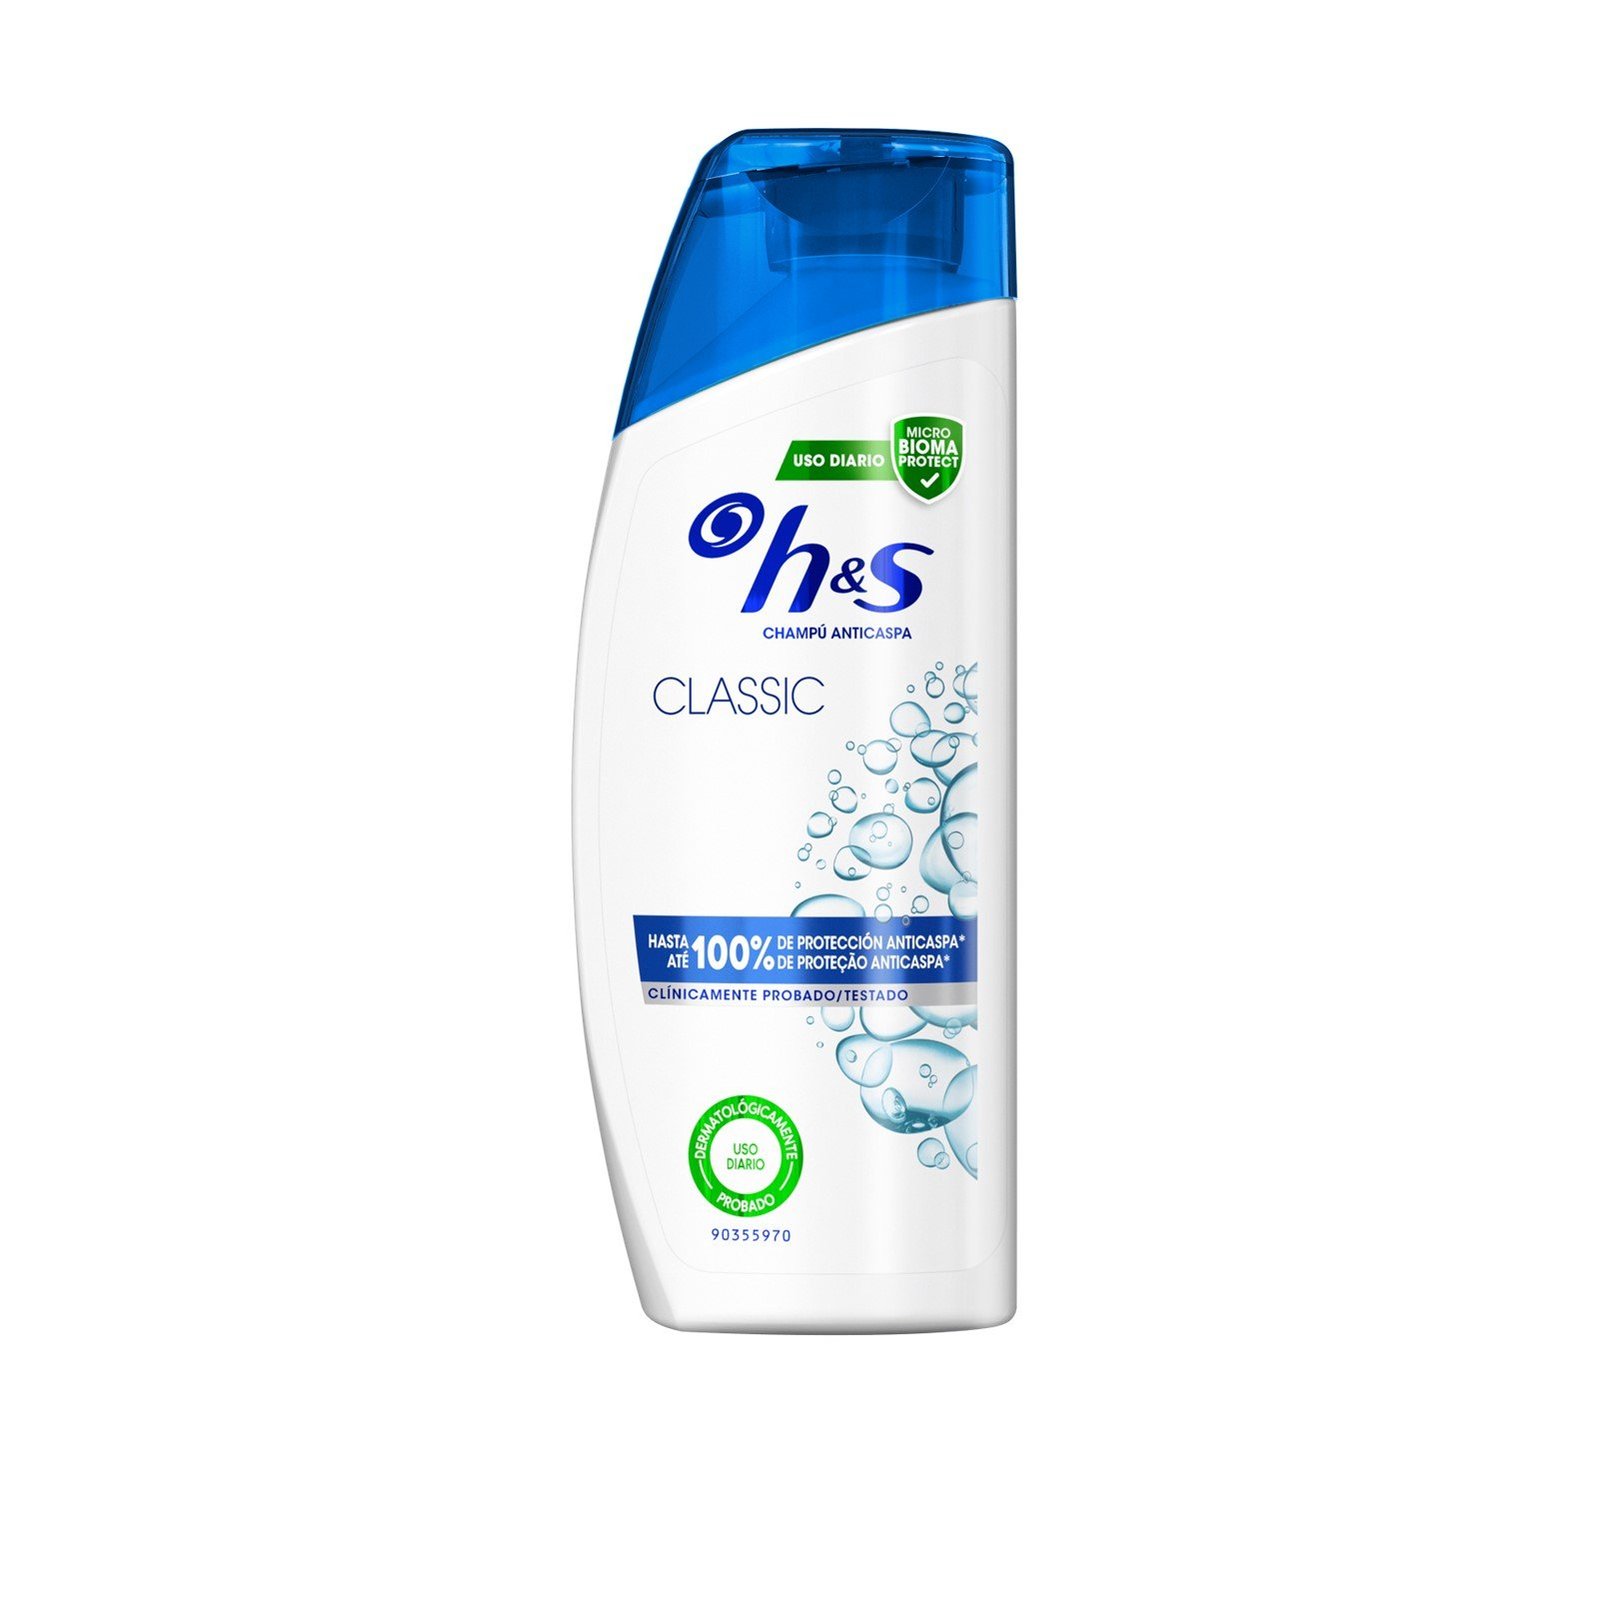 H&S Classic Clean Shampoo 600ml (20.2 fl oz)